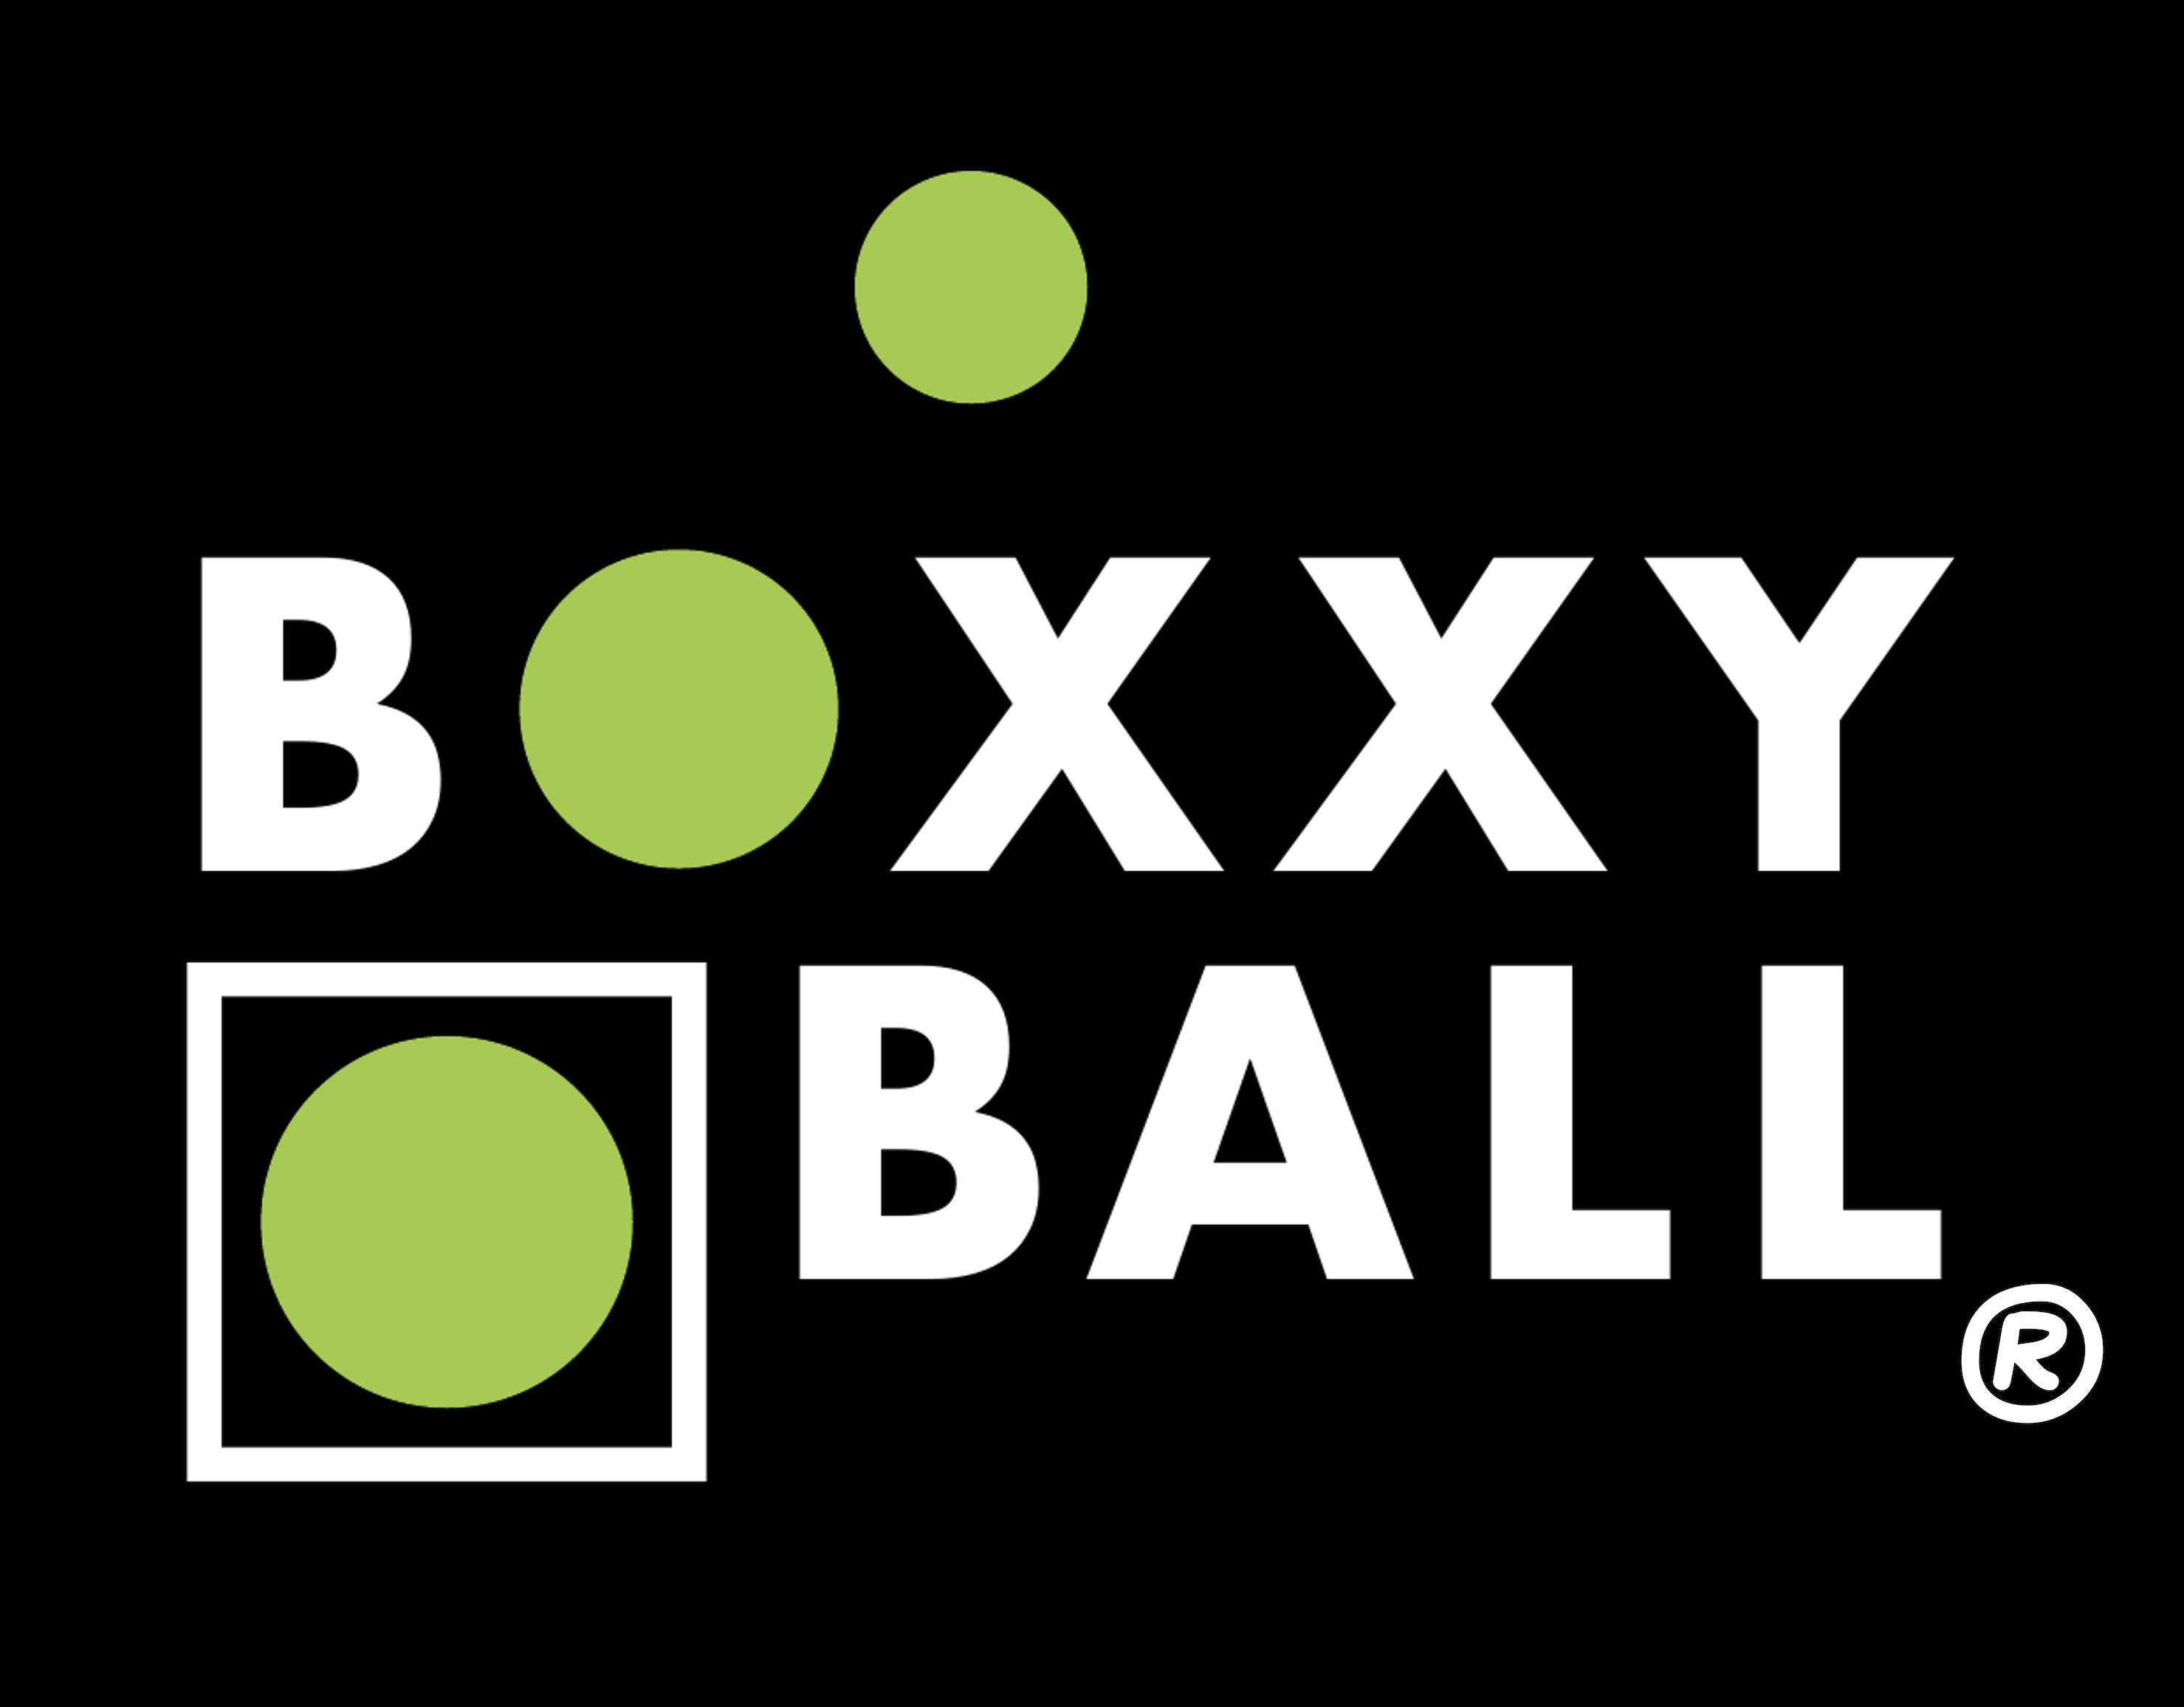 www.boxxes.net